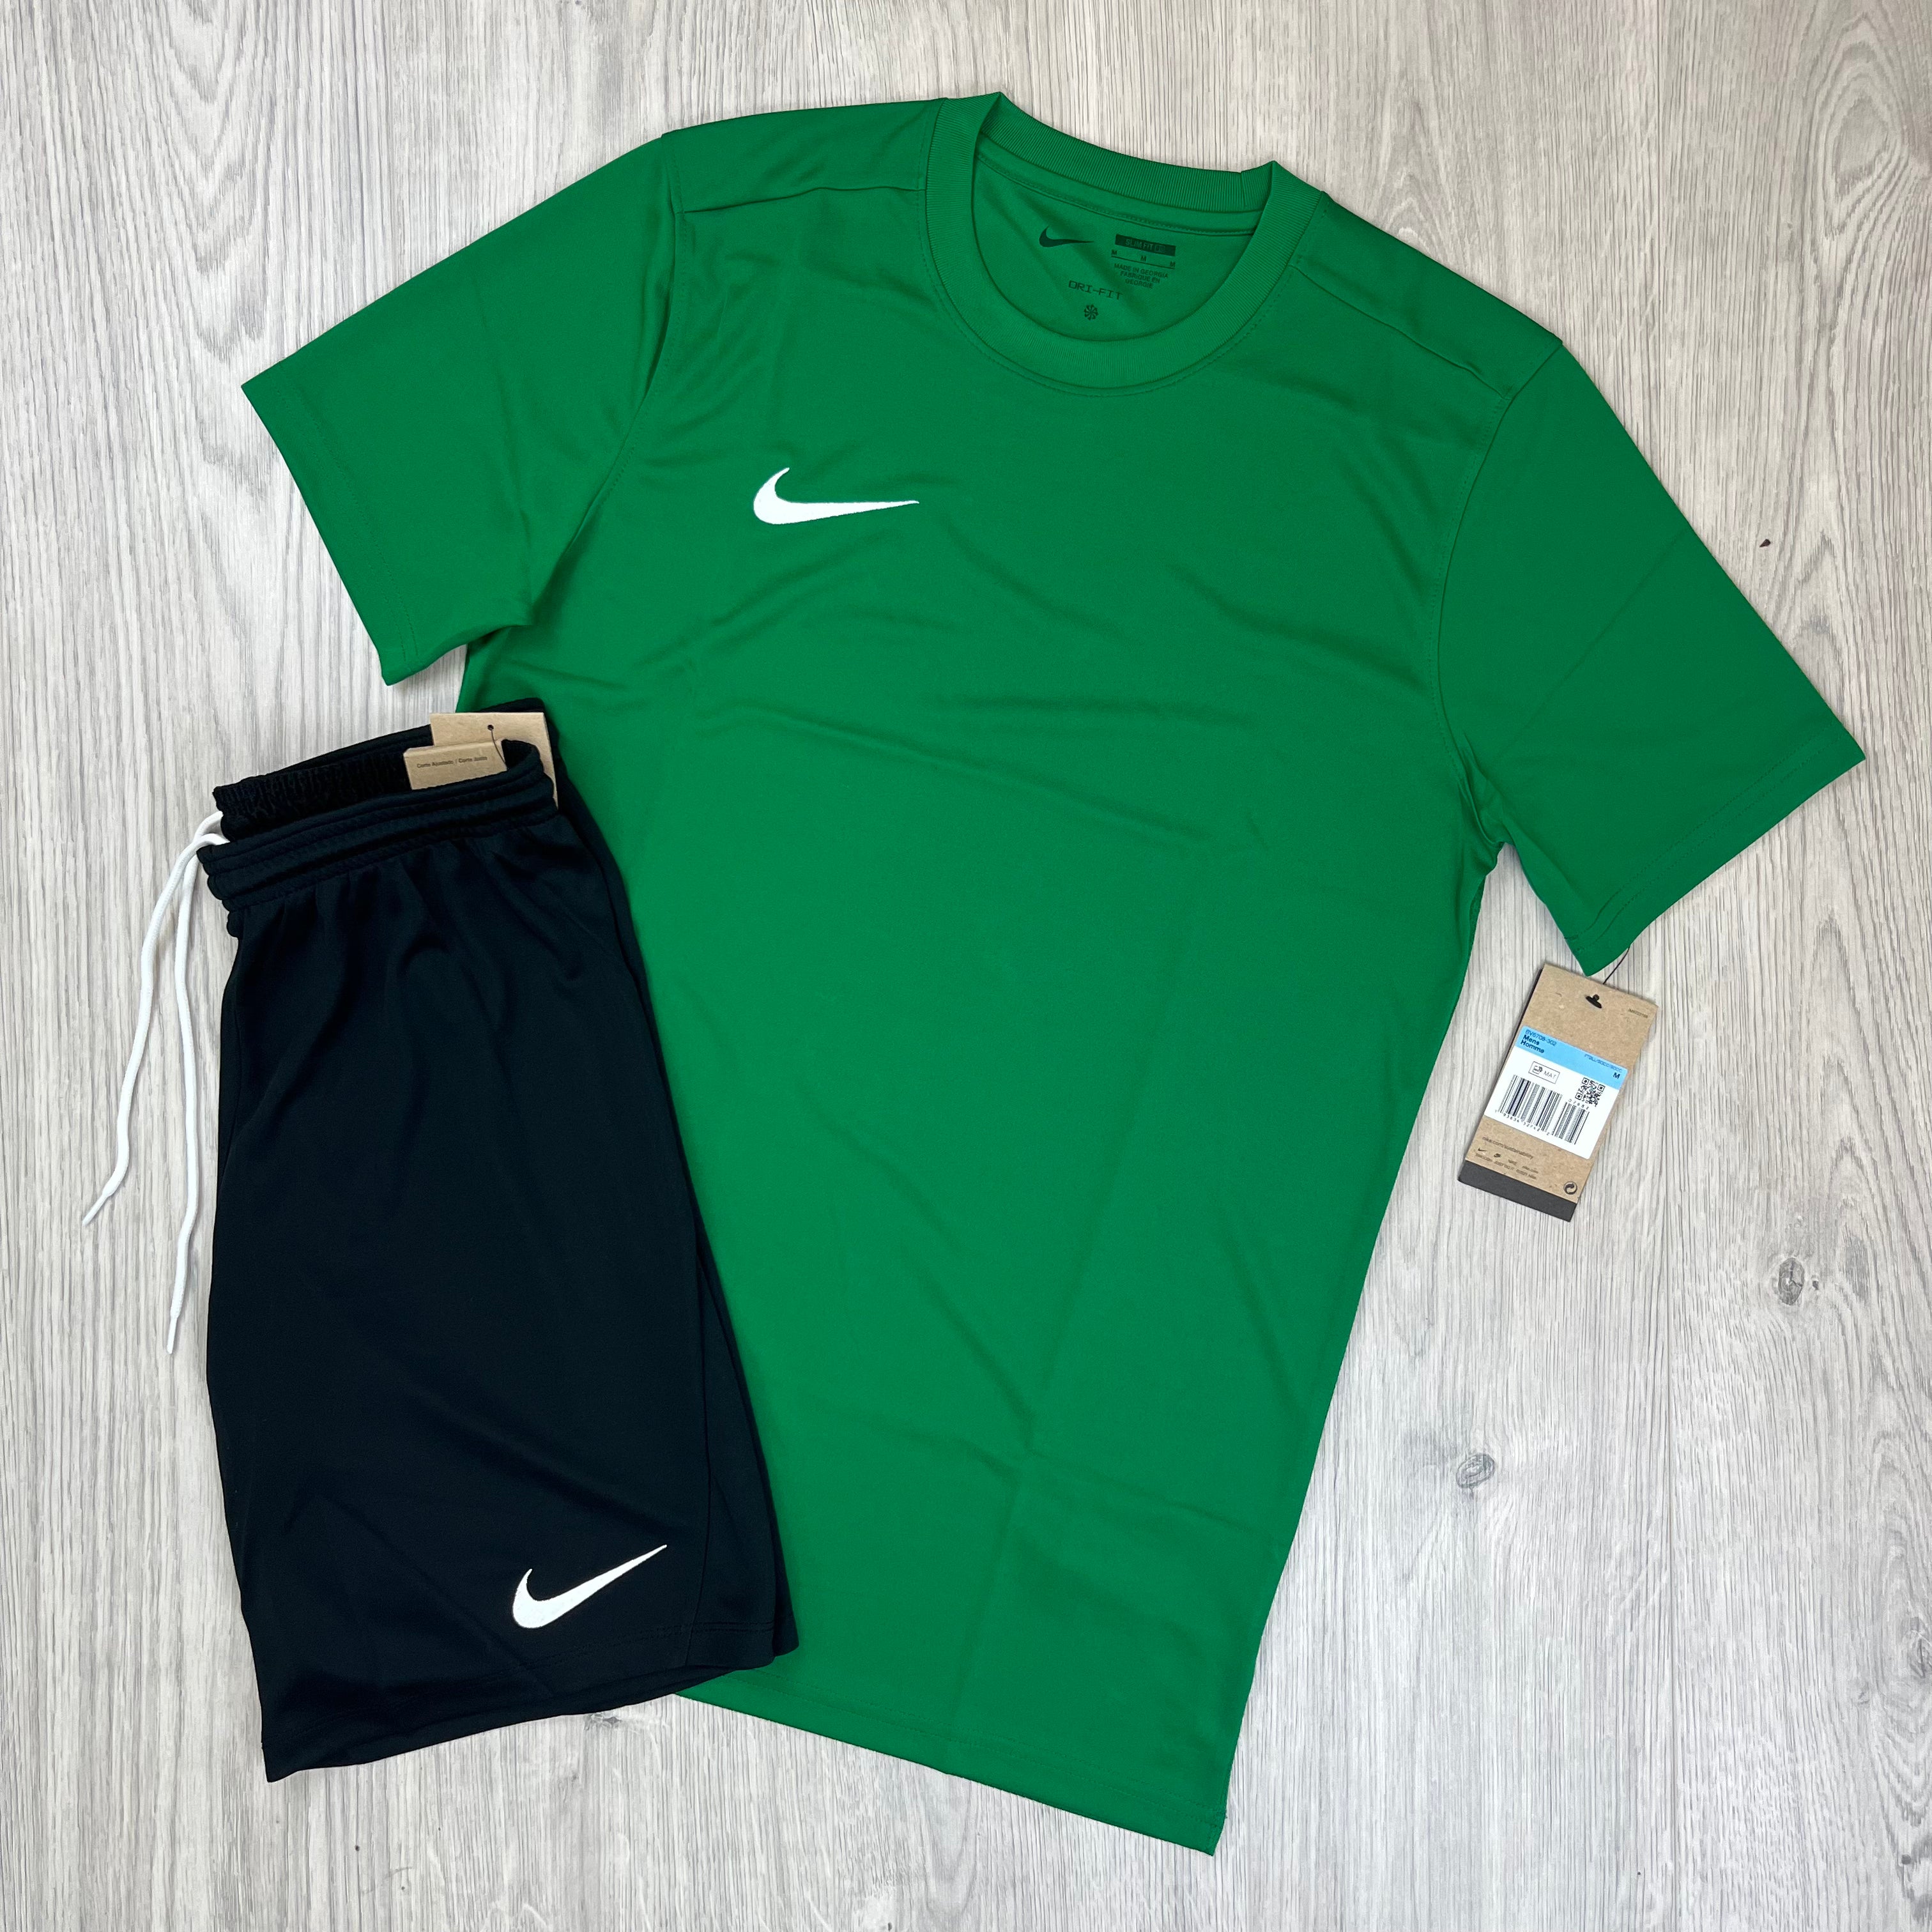 Nike Dri-Fit Set - Green/Black